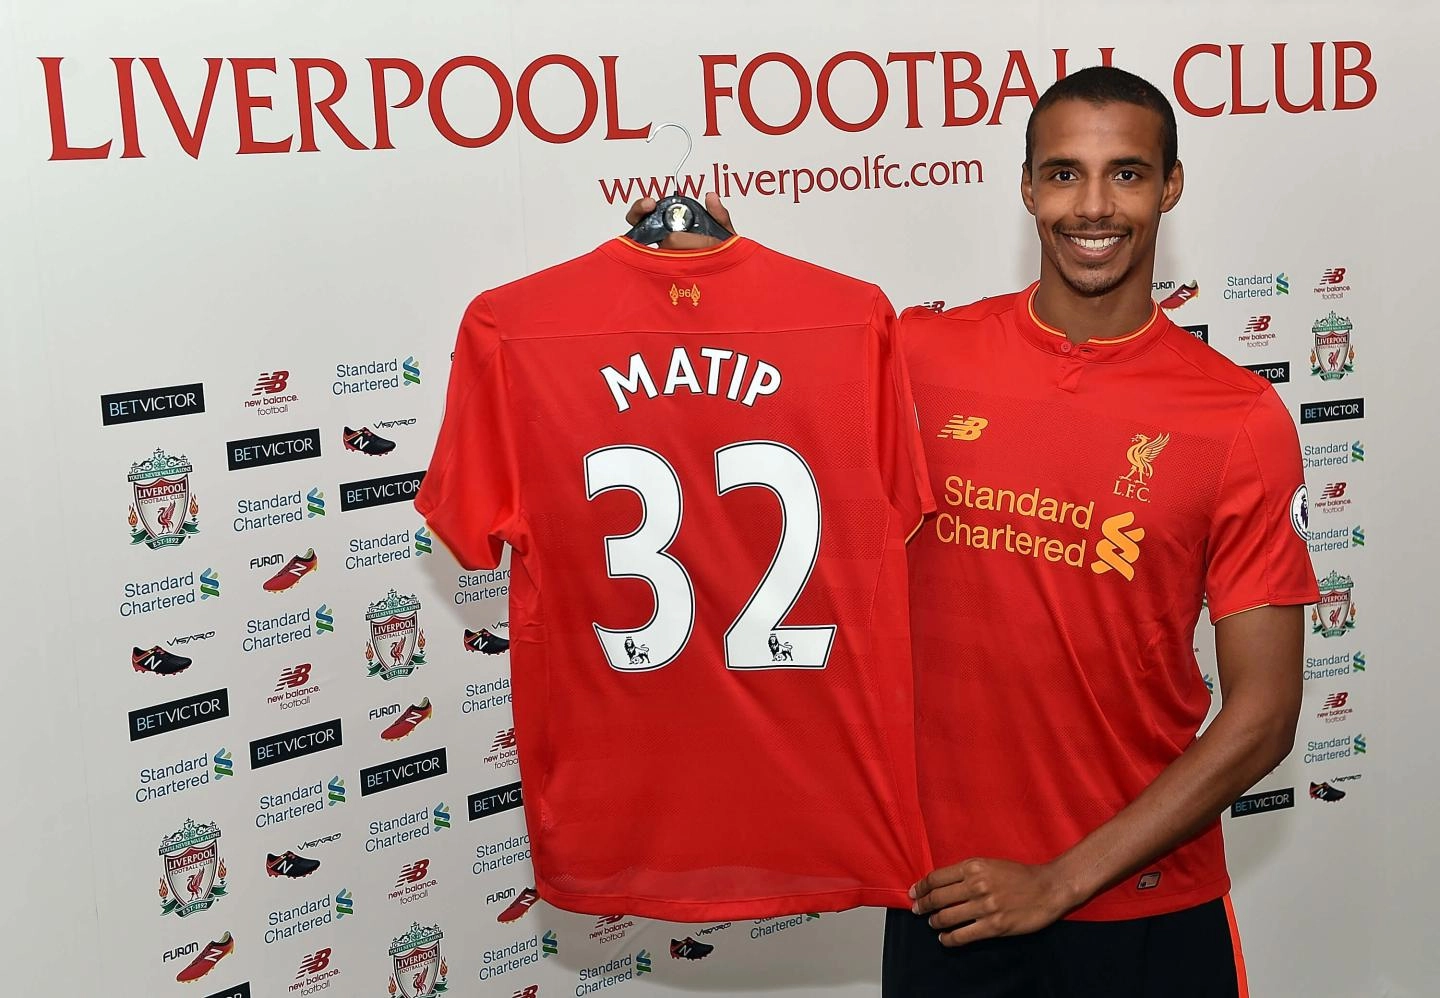 Julio de 2016: Se presenta oficialmente como jugador del Liverpool